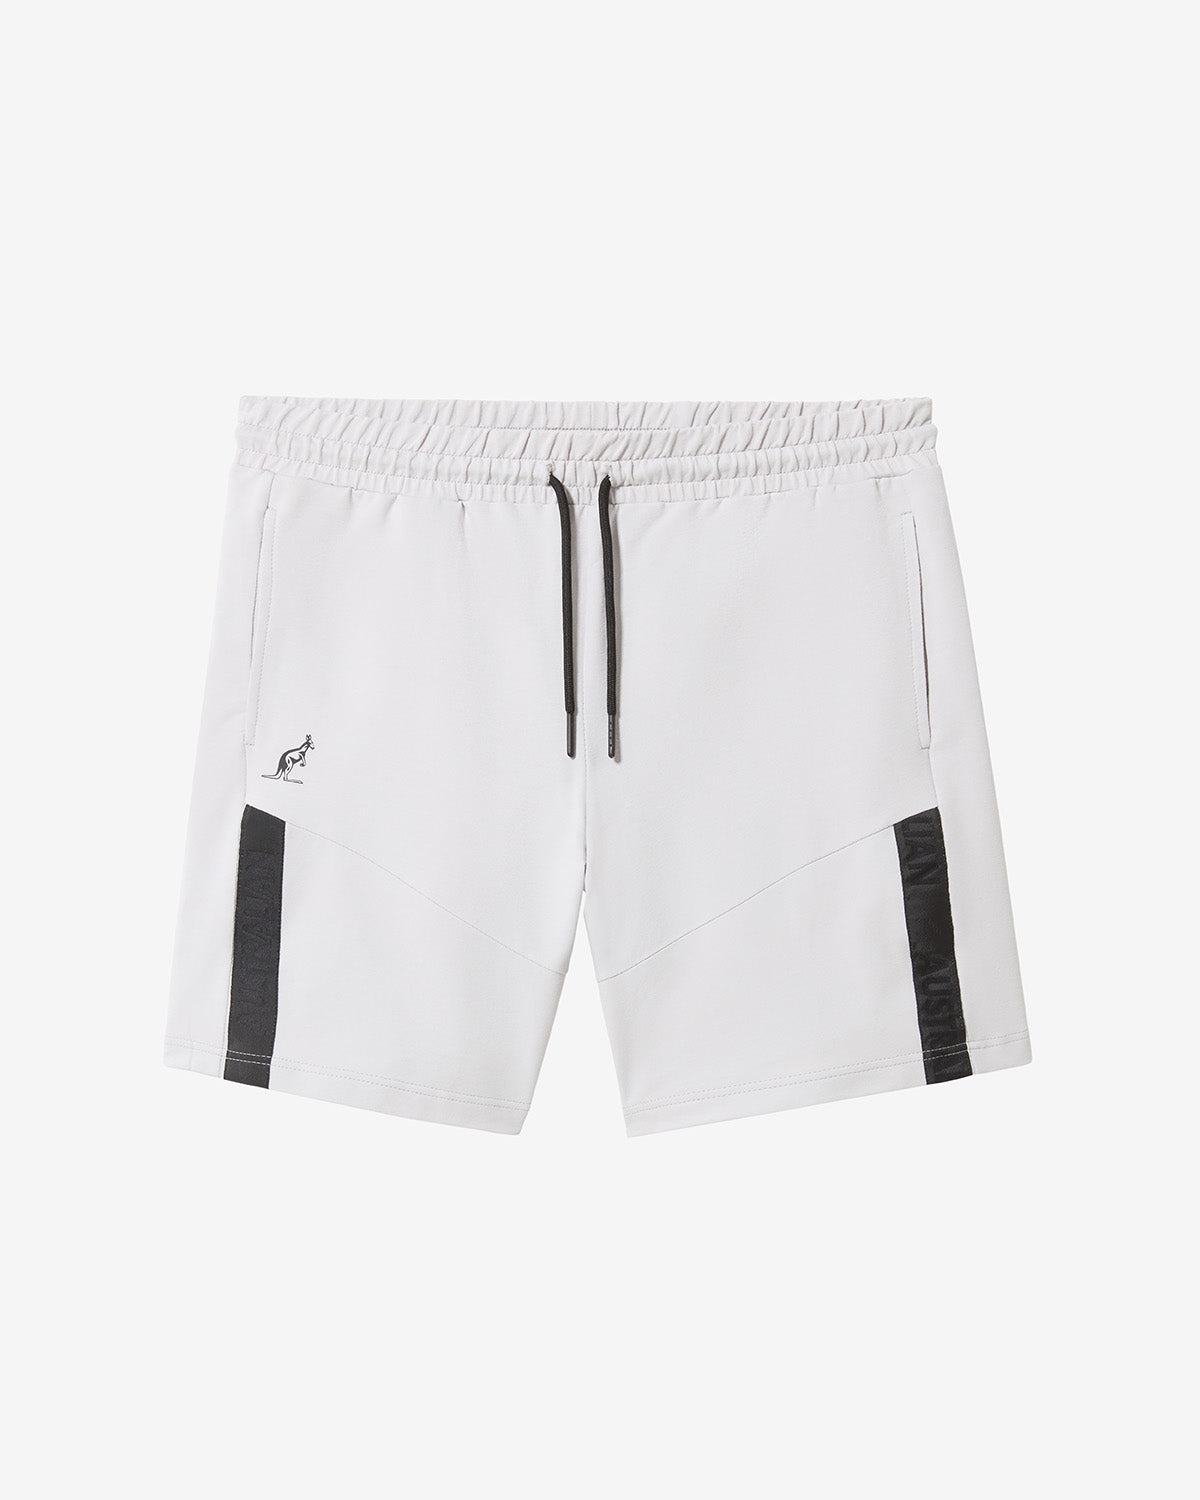 Impact Shorts: Australian Sportswear